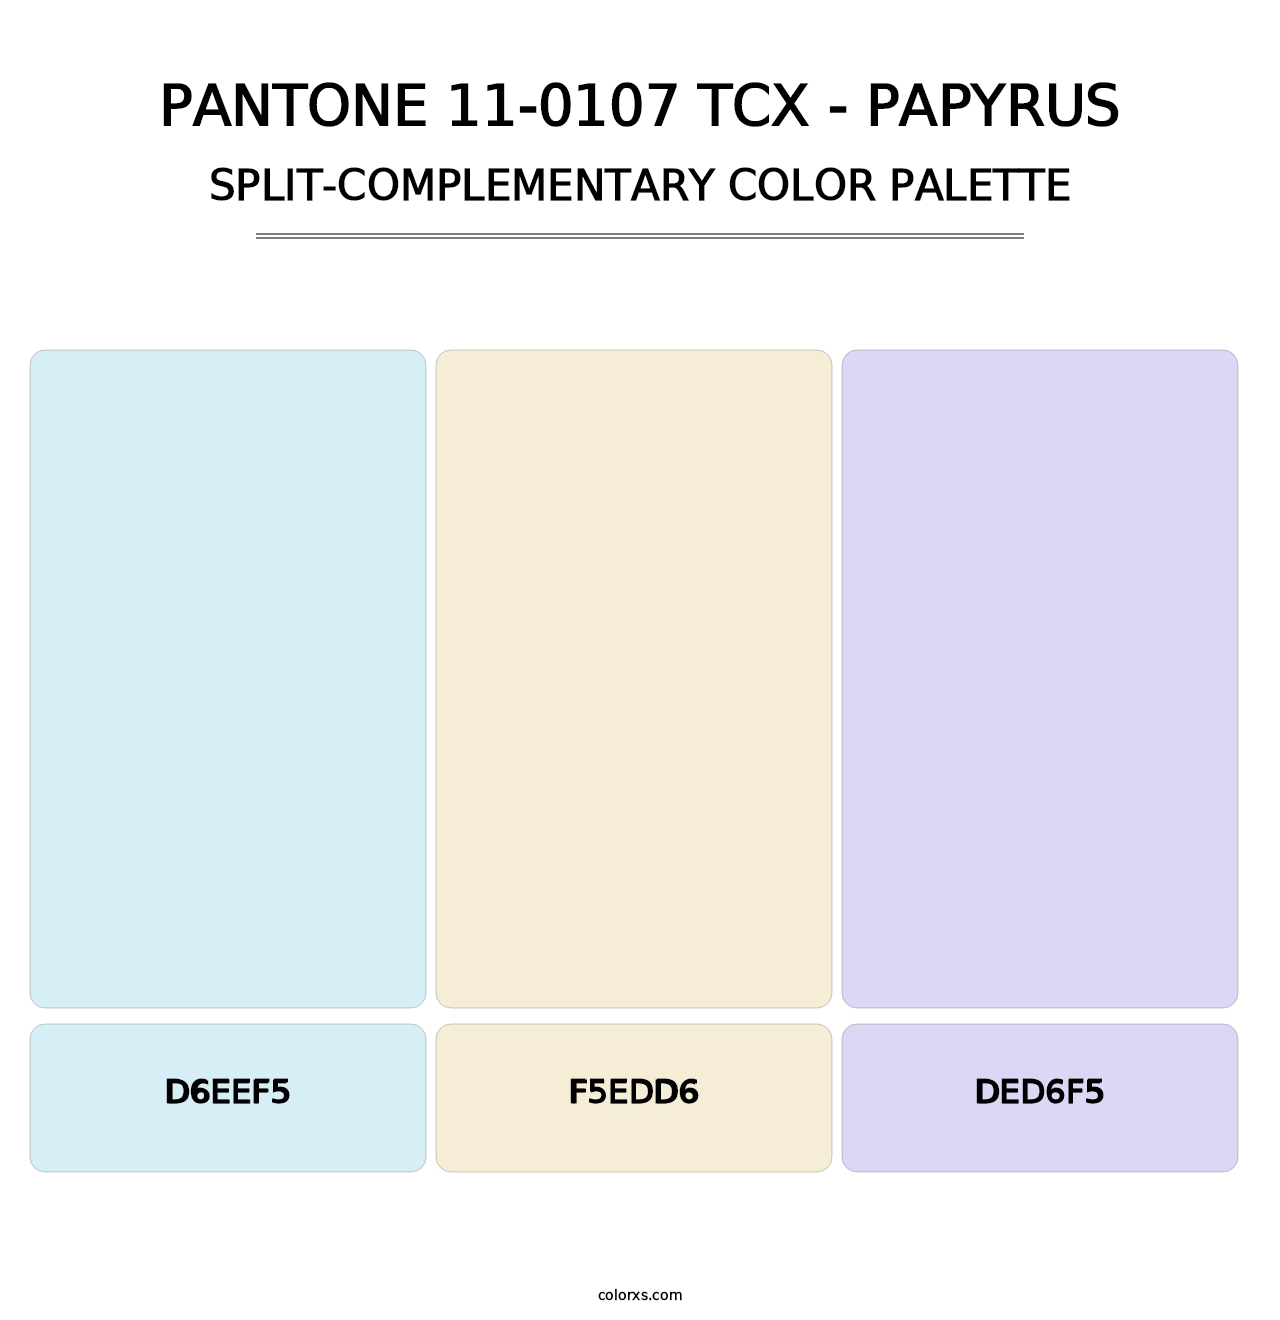 PANTONE 11-0107 TCX - Papyrus - Split-Complementary Color Palette